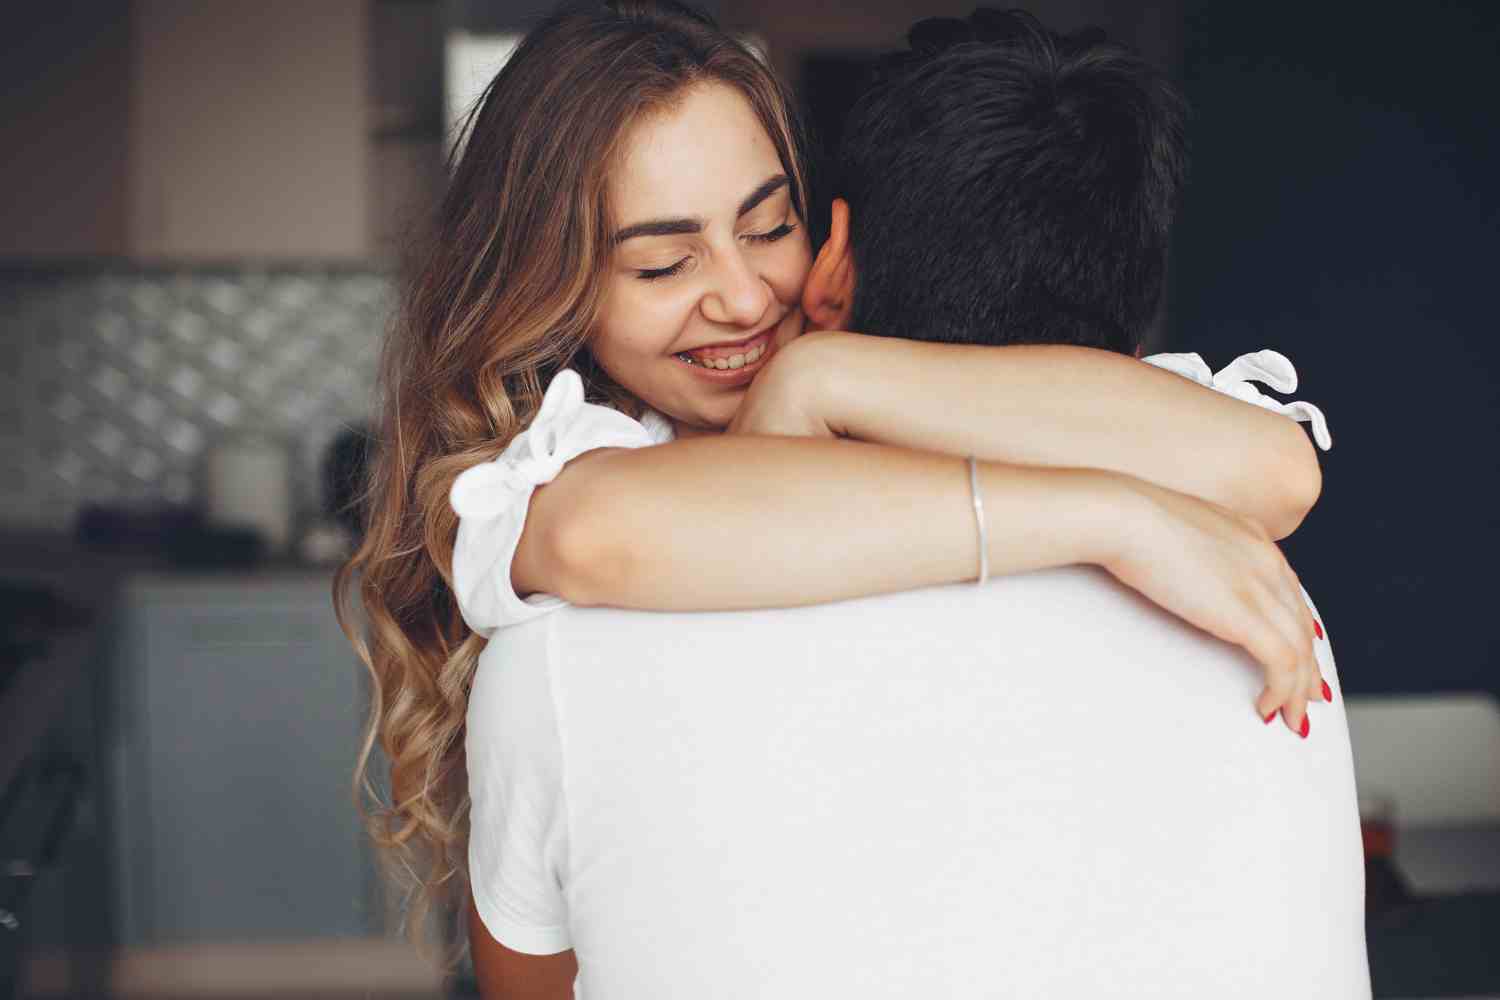 how to know a flirty hug